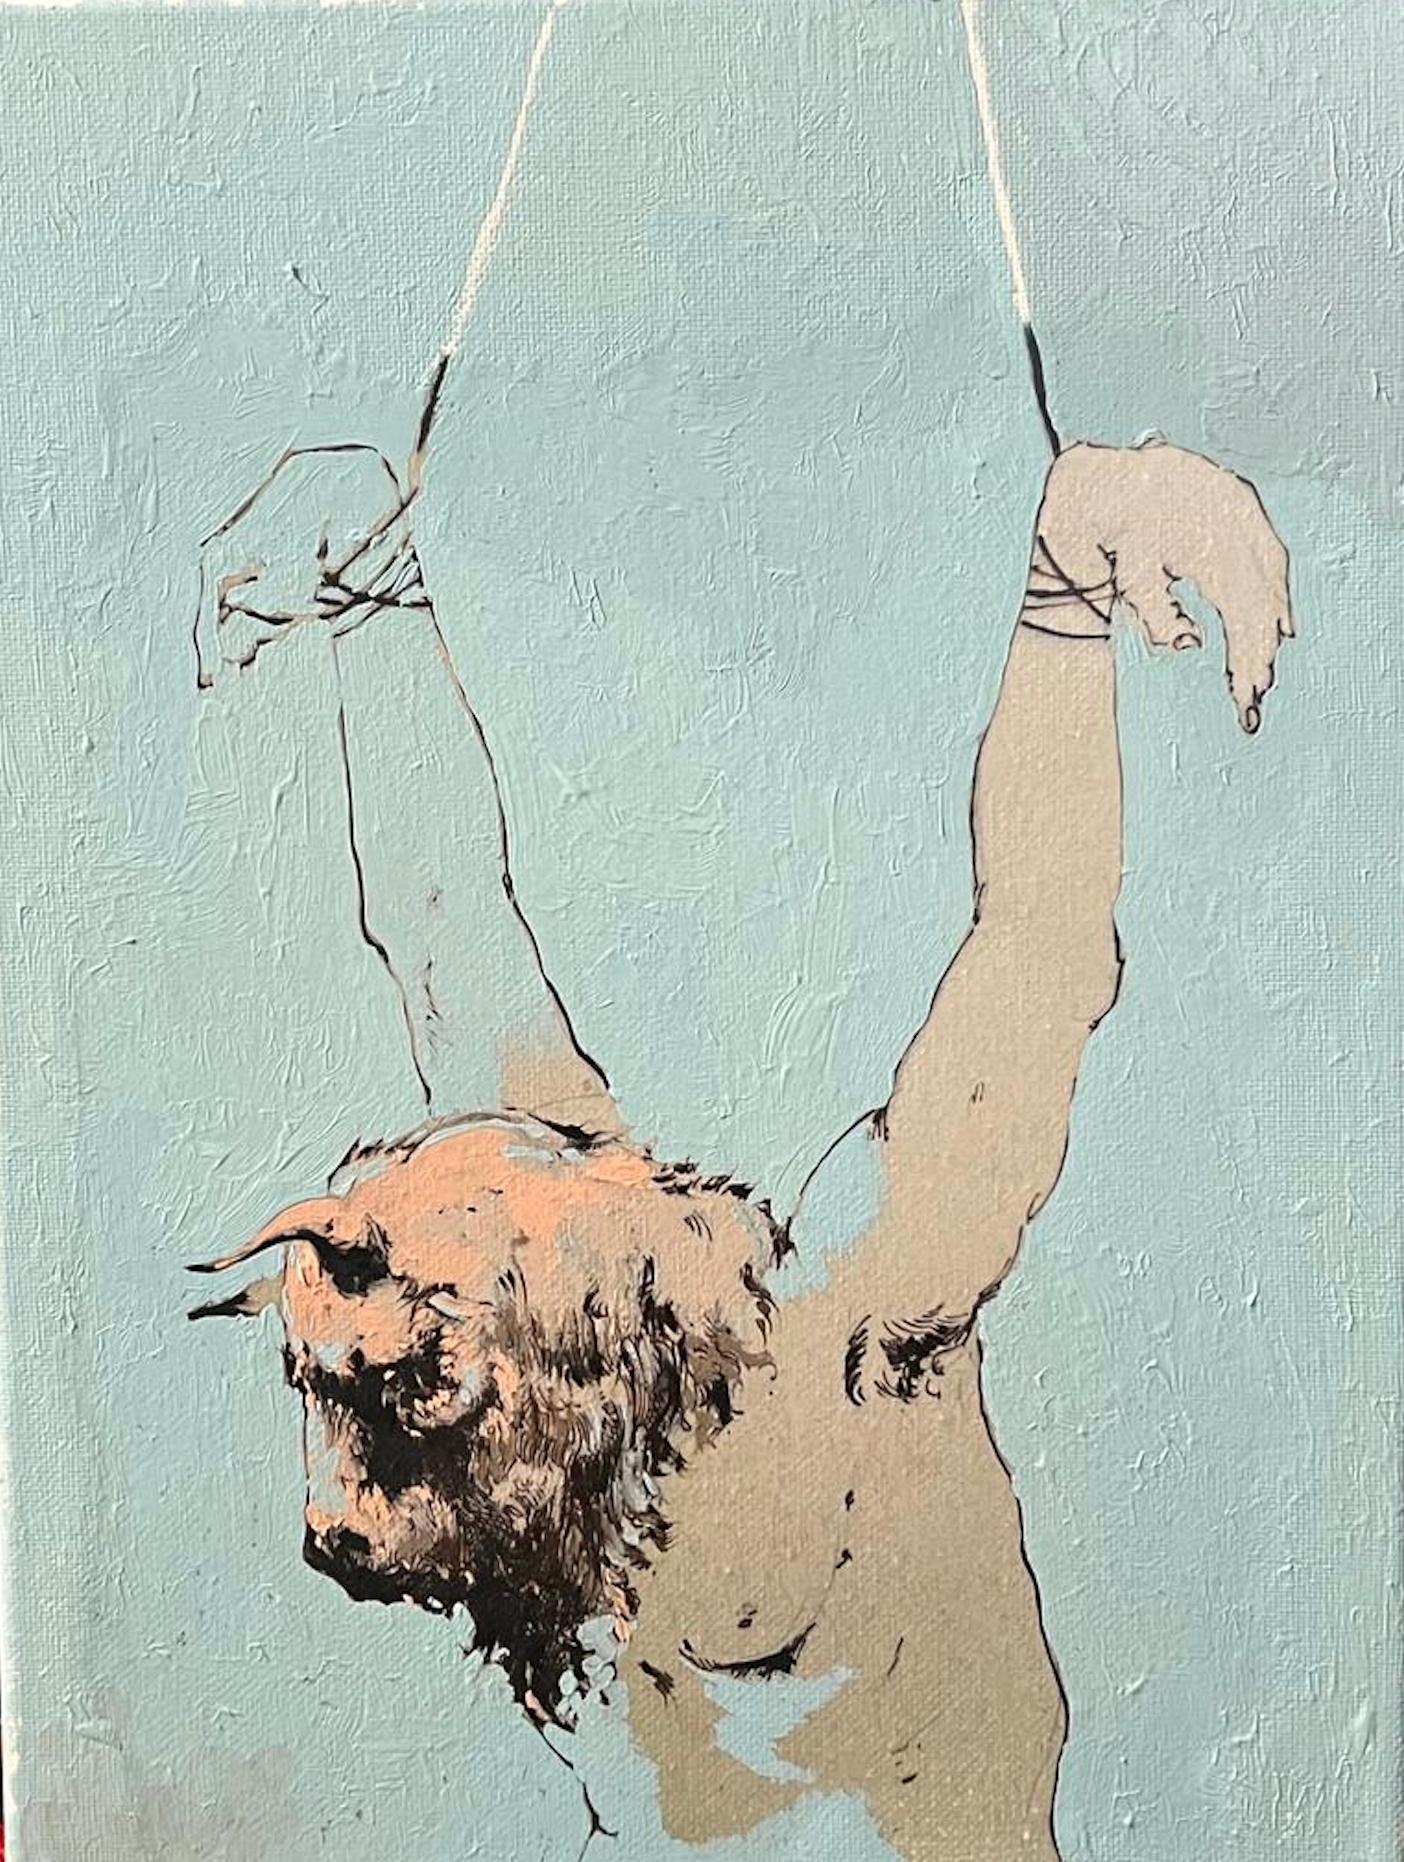 Figurative Painting Jesus Nodarse - Peinture d'un Minotaure, toile à l'huile originale de l'artiste cubain